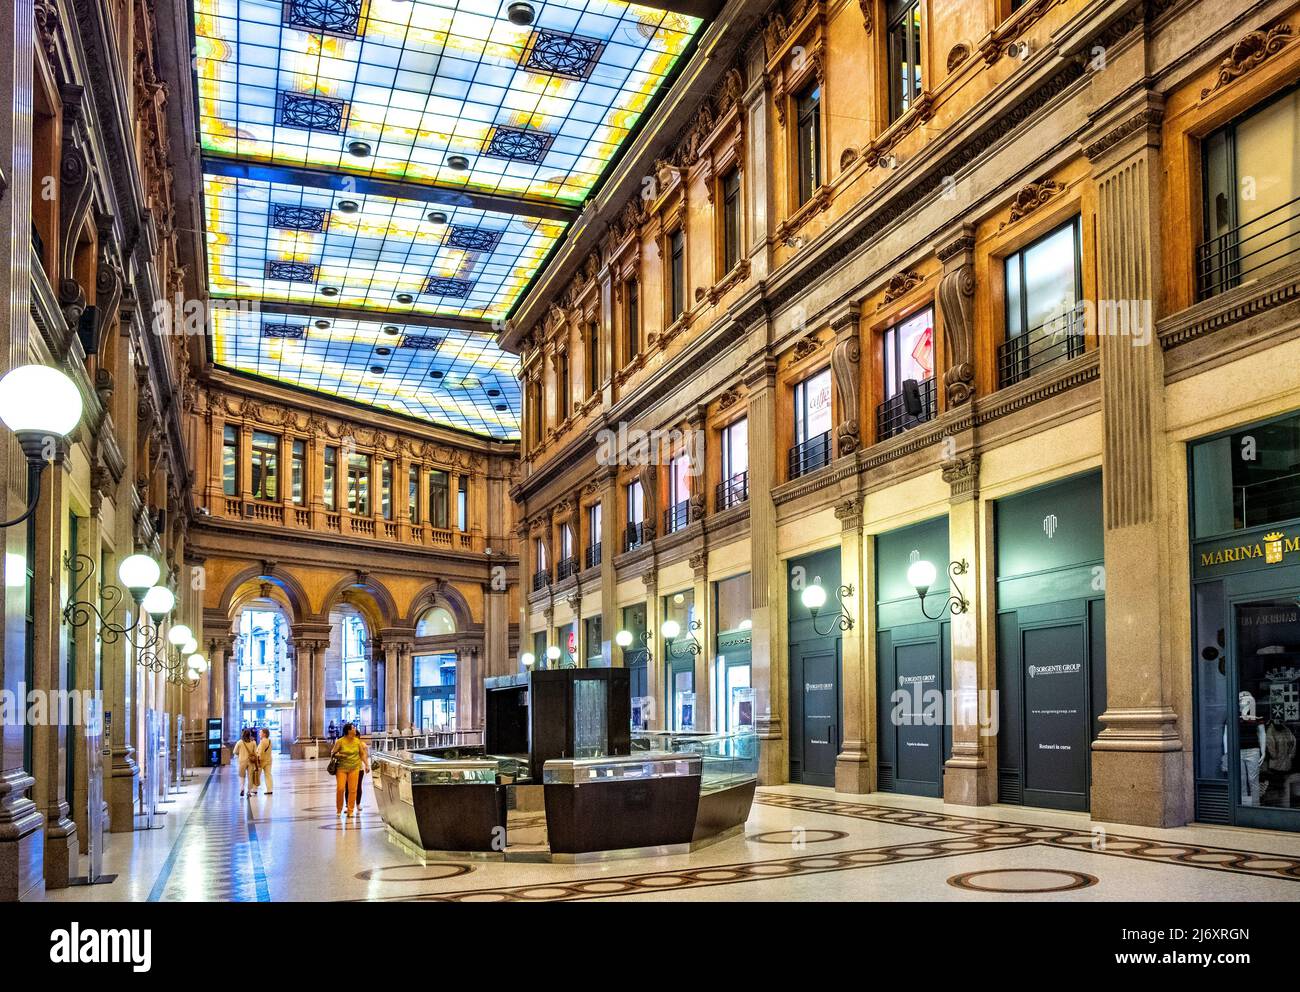 Rom, Italien - 25. Mai 2018: Innenhalle der Galleria Alberto Sordi Einkaufspassage, bekannt als Galleria Colonna, am Piazza Colonna Platz im historischen c Stockfoto